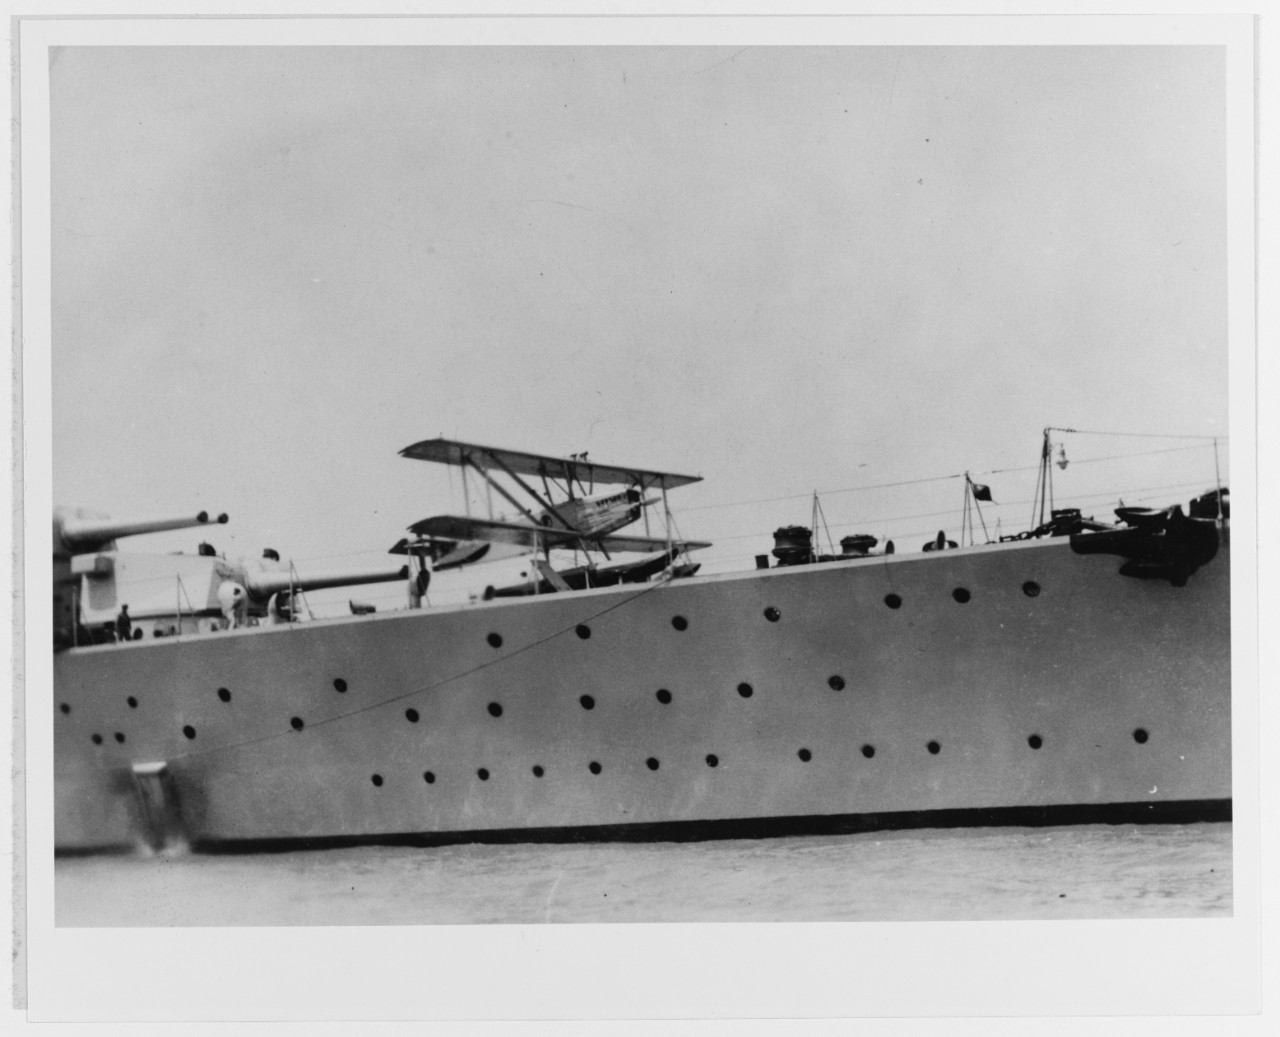 TRENTO (Italian heavy cruiser, 1927)